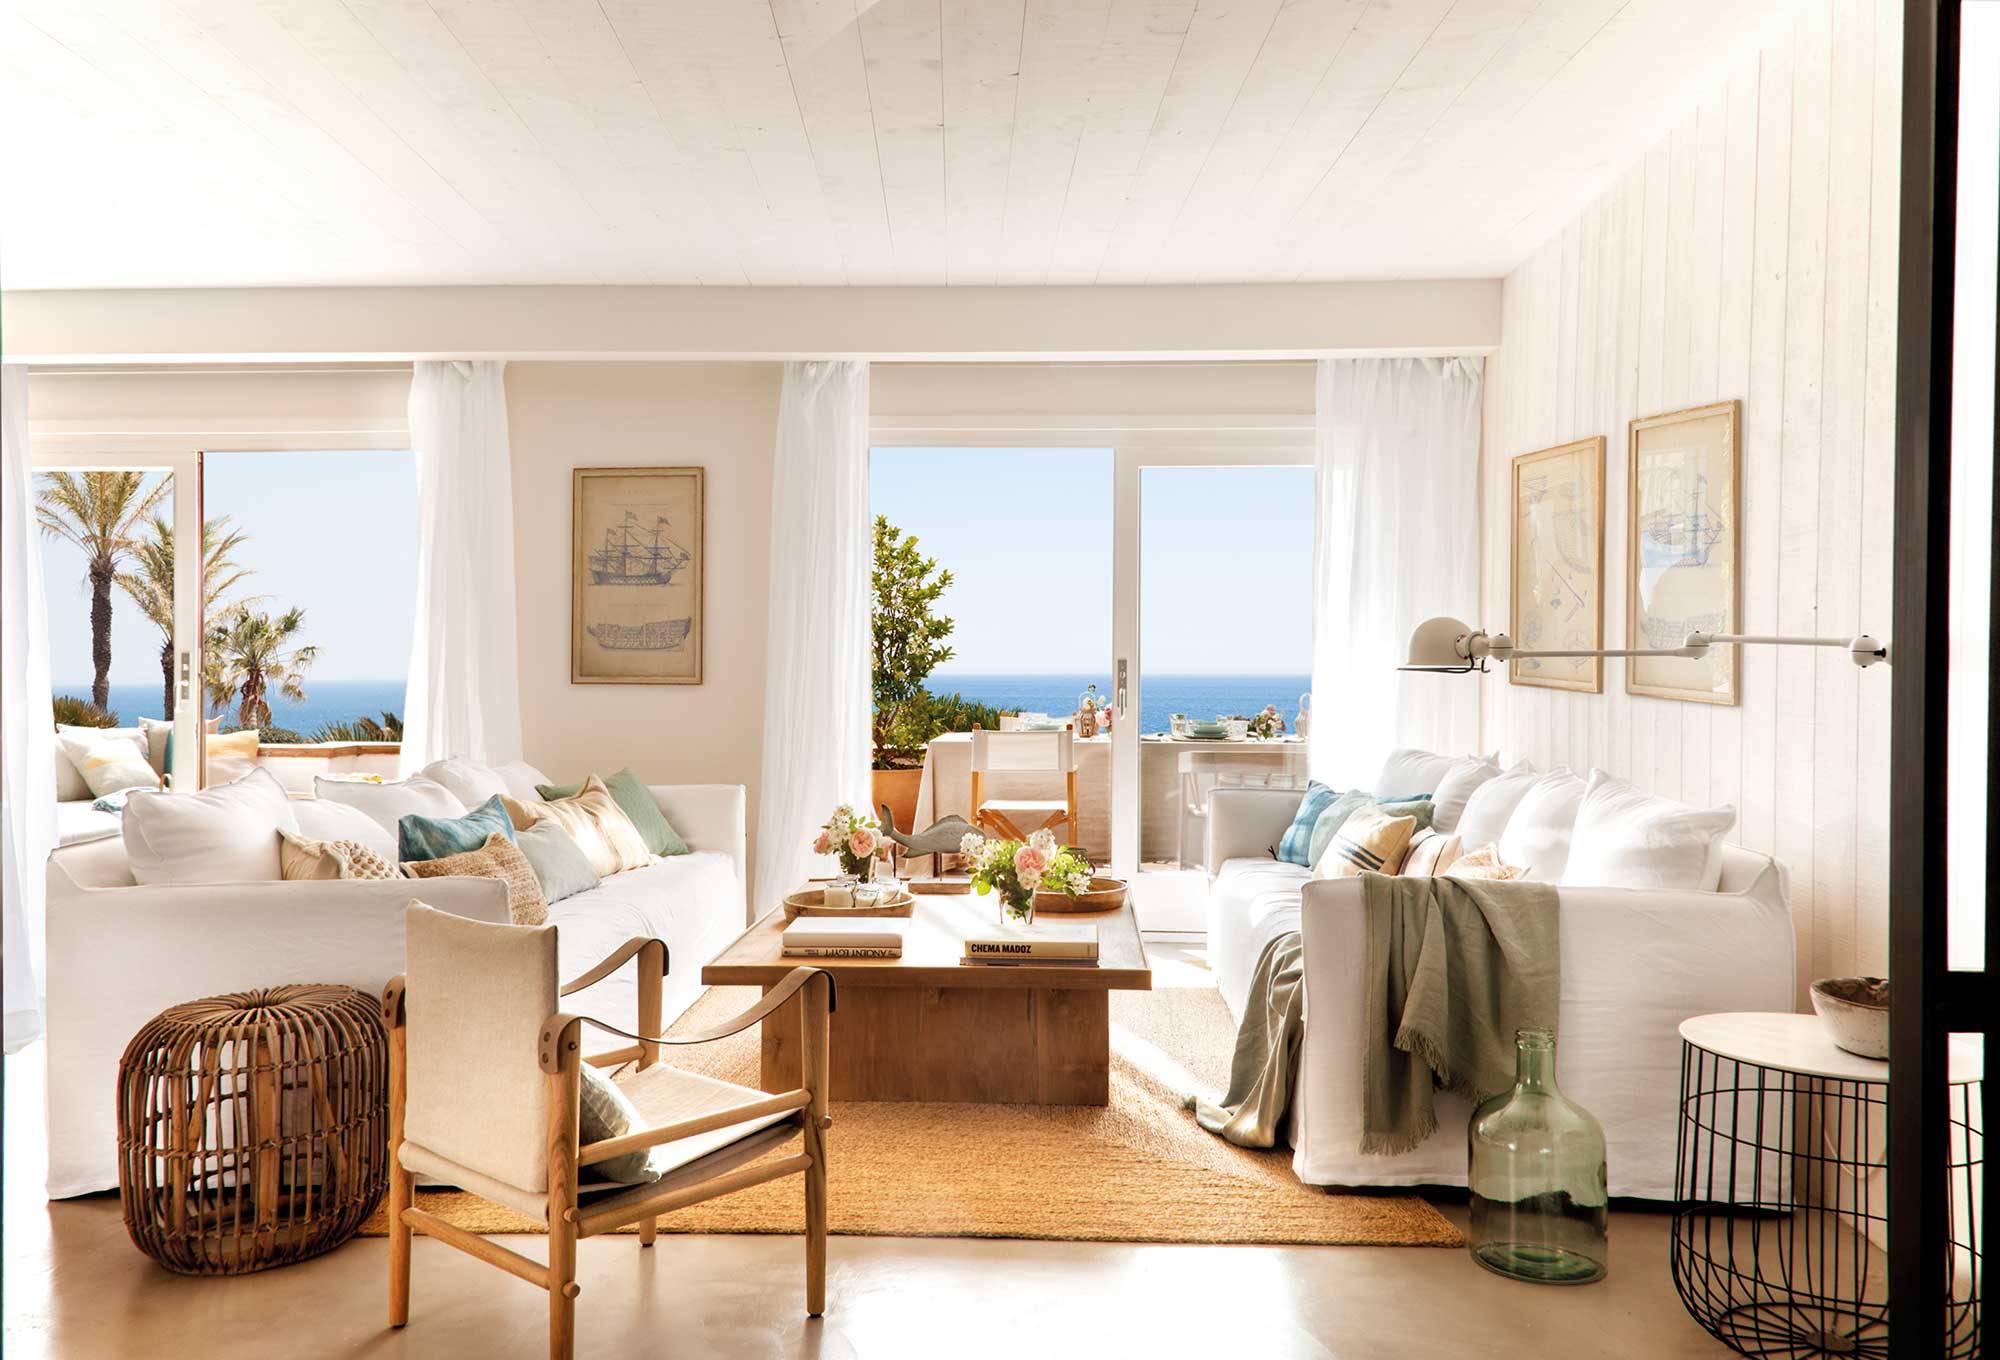 Salón de piso de verano con sofás blancos y alfombra de fibras.